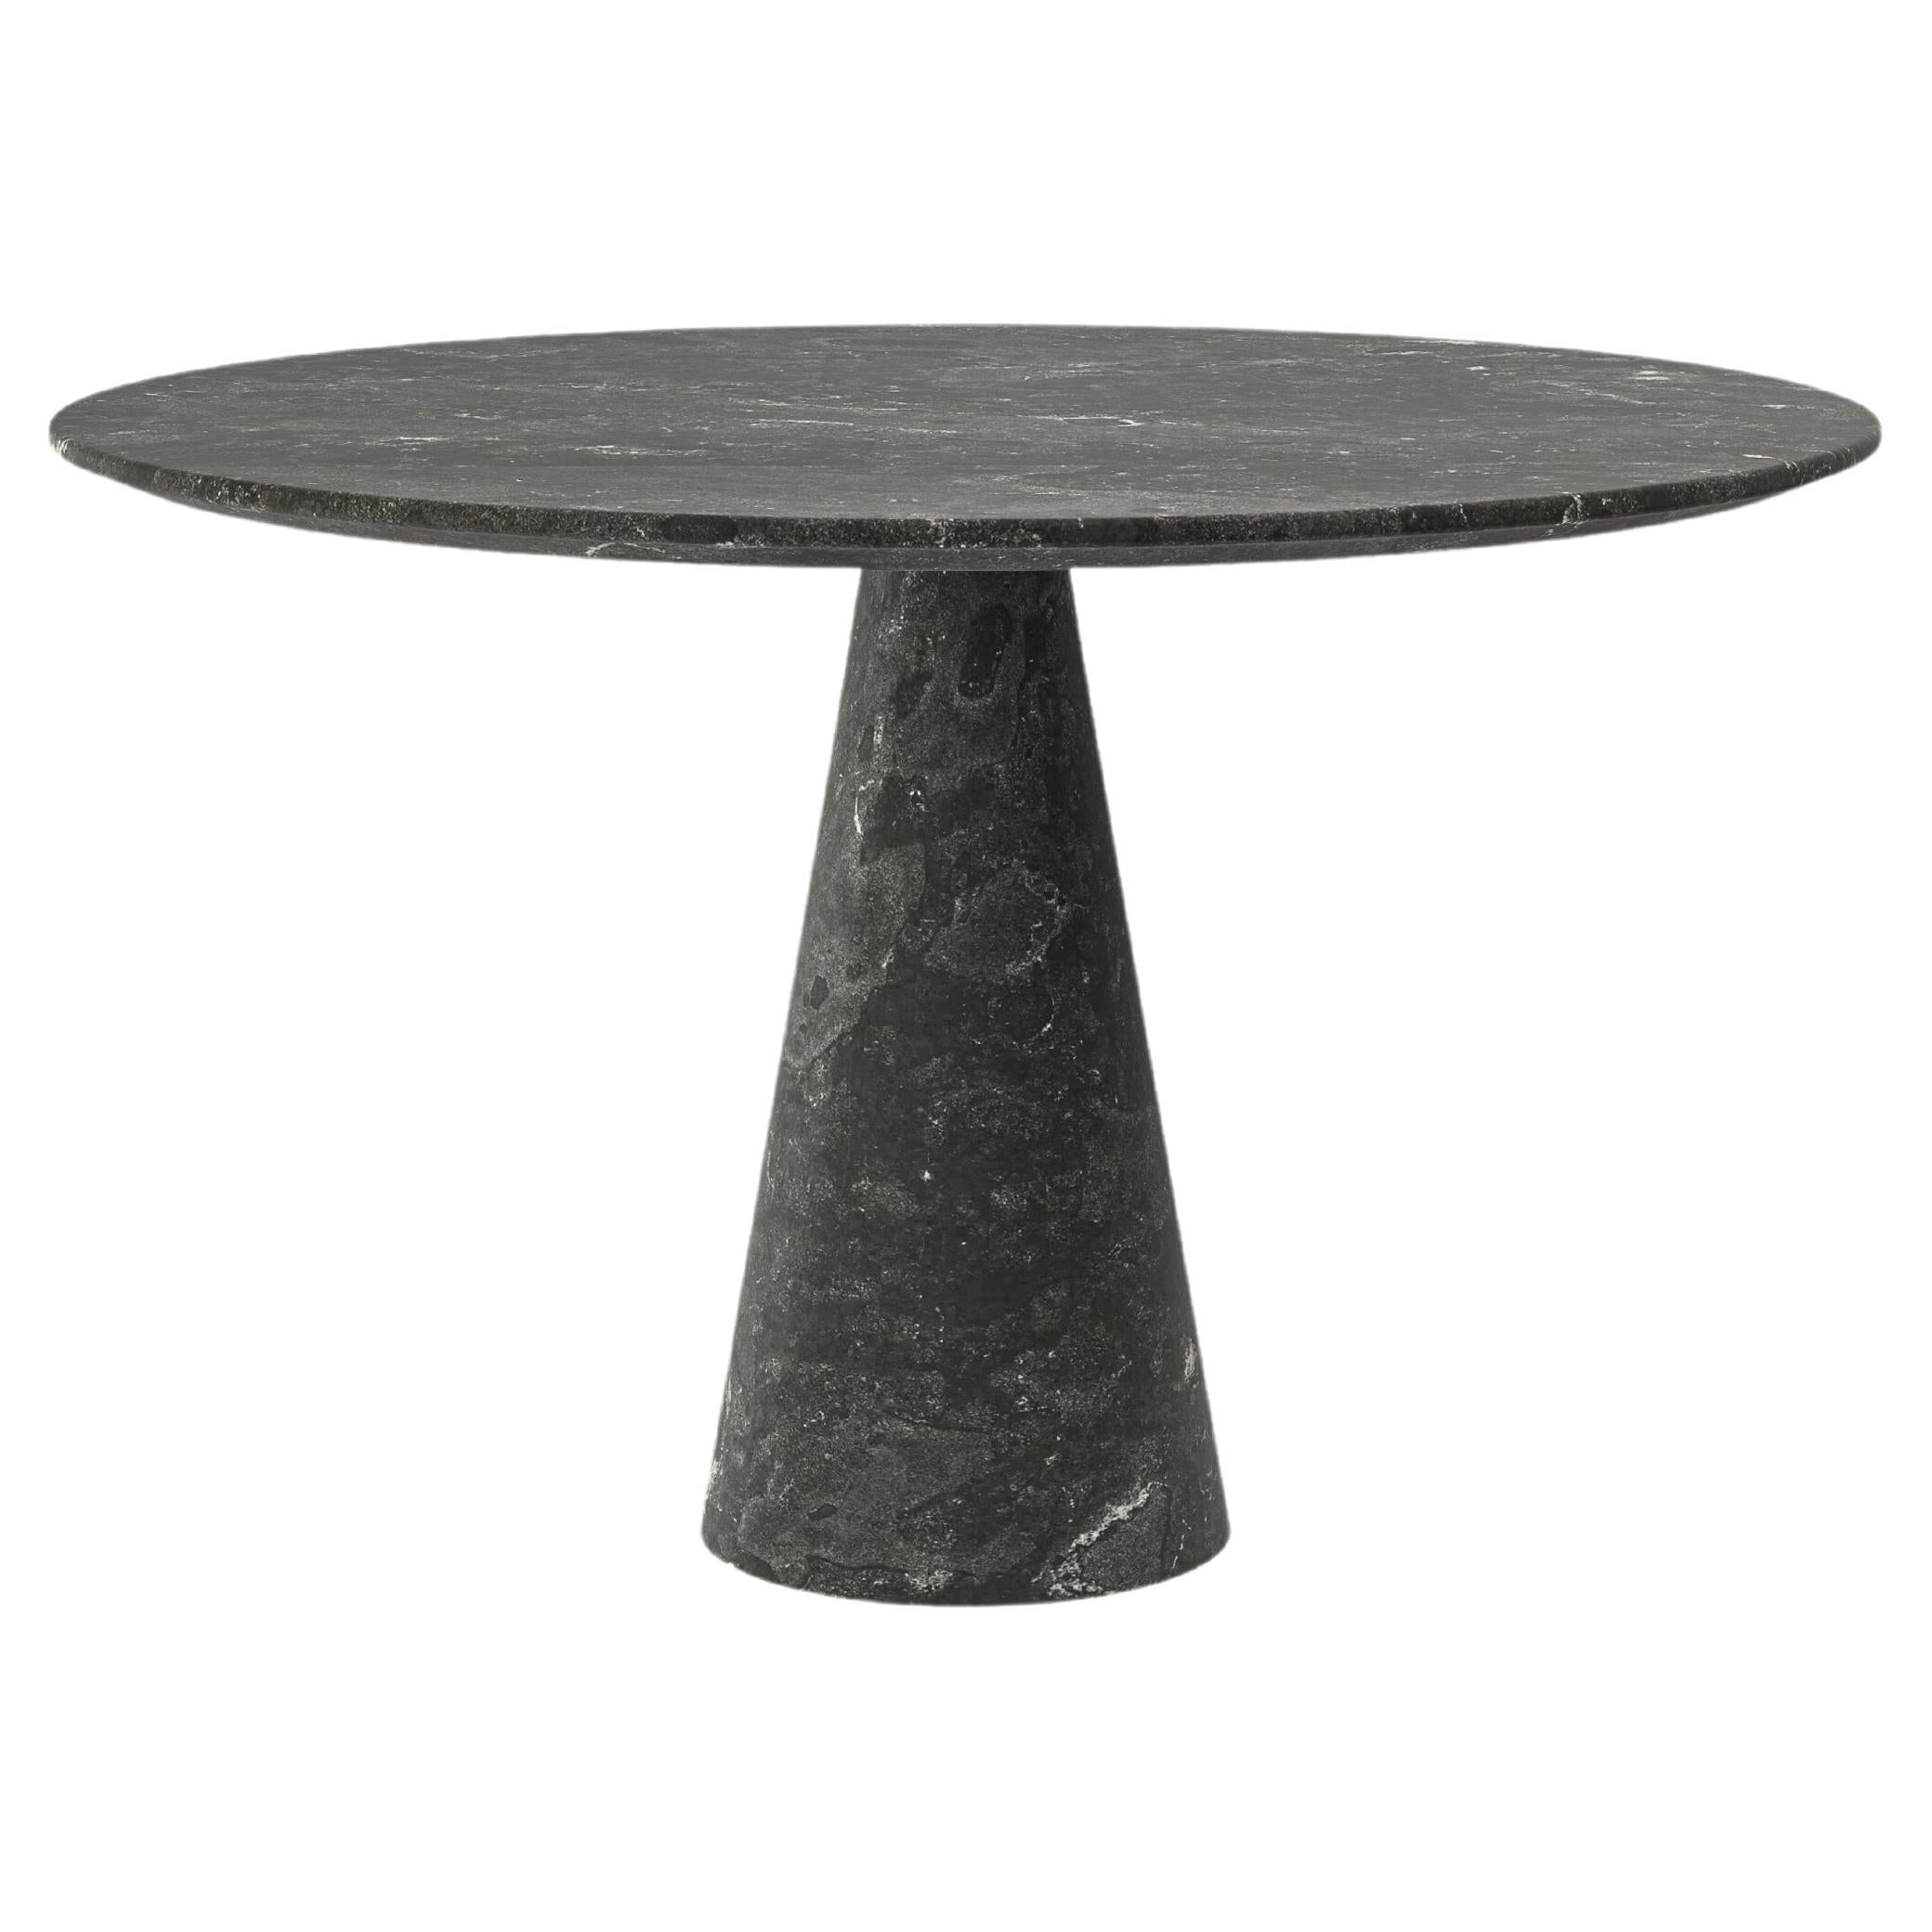 FORM(LA) Cono Round Dining Table 42”L x 42”W x 30”H Nero Petite Granite For Sale